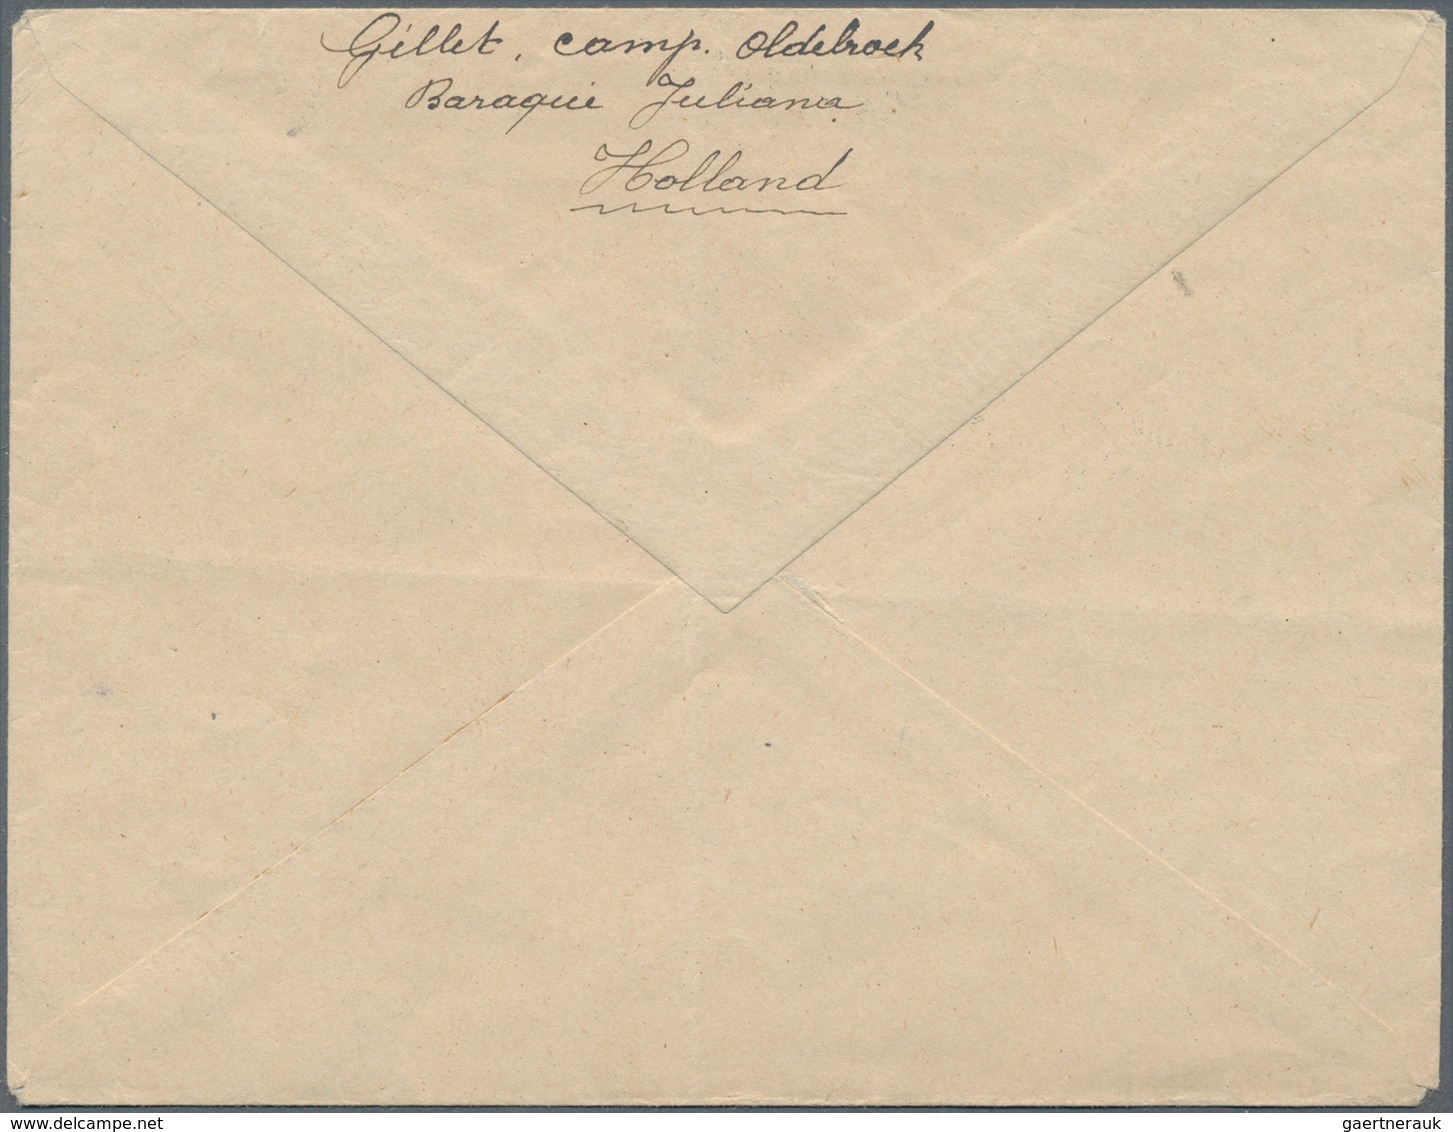 Niederlande - Portofreiheitsmarken: 1916, Internment Camp Stamp, Green, Tied By Dater LEGERPLAATS BI - Officials